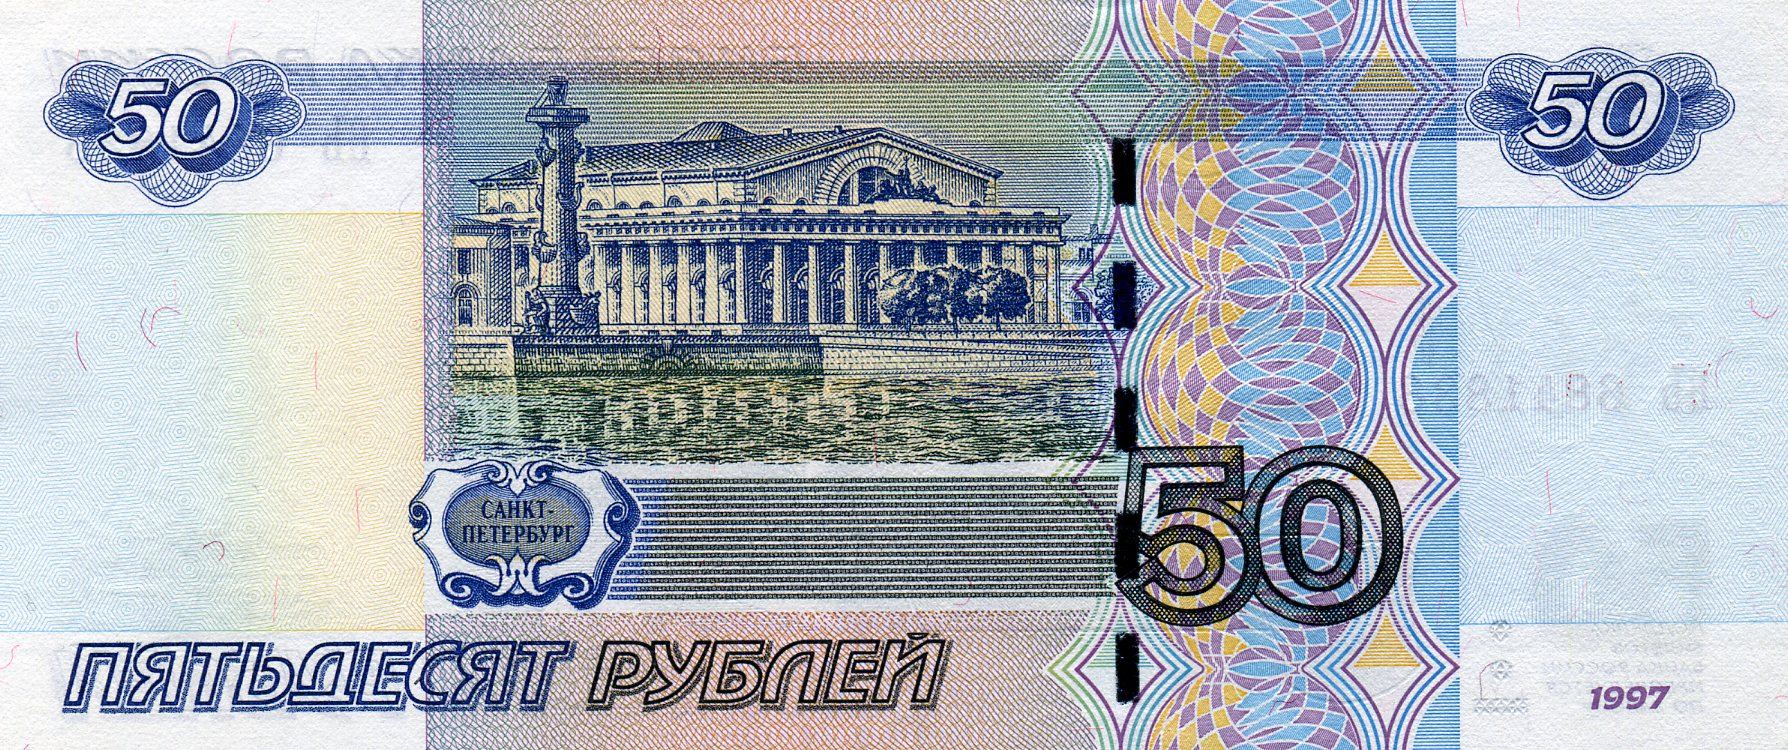 50 рублей 1997 года. Реверс. Реферат Рефератович.